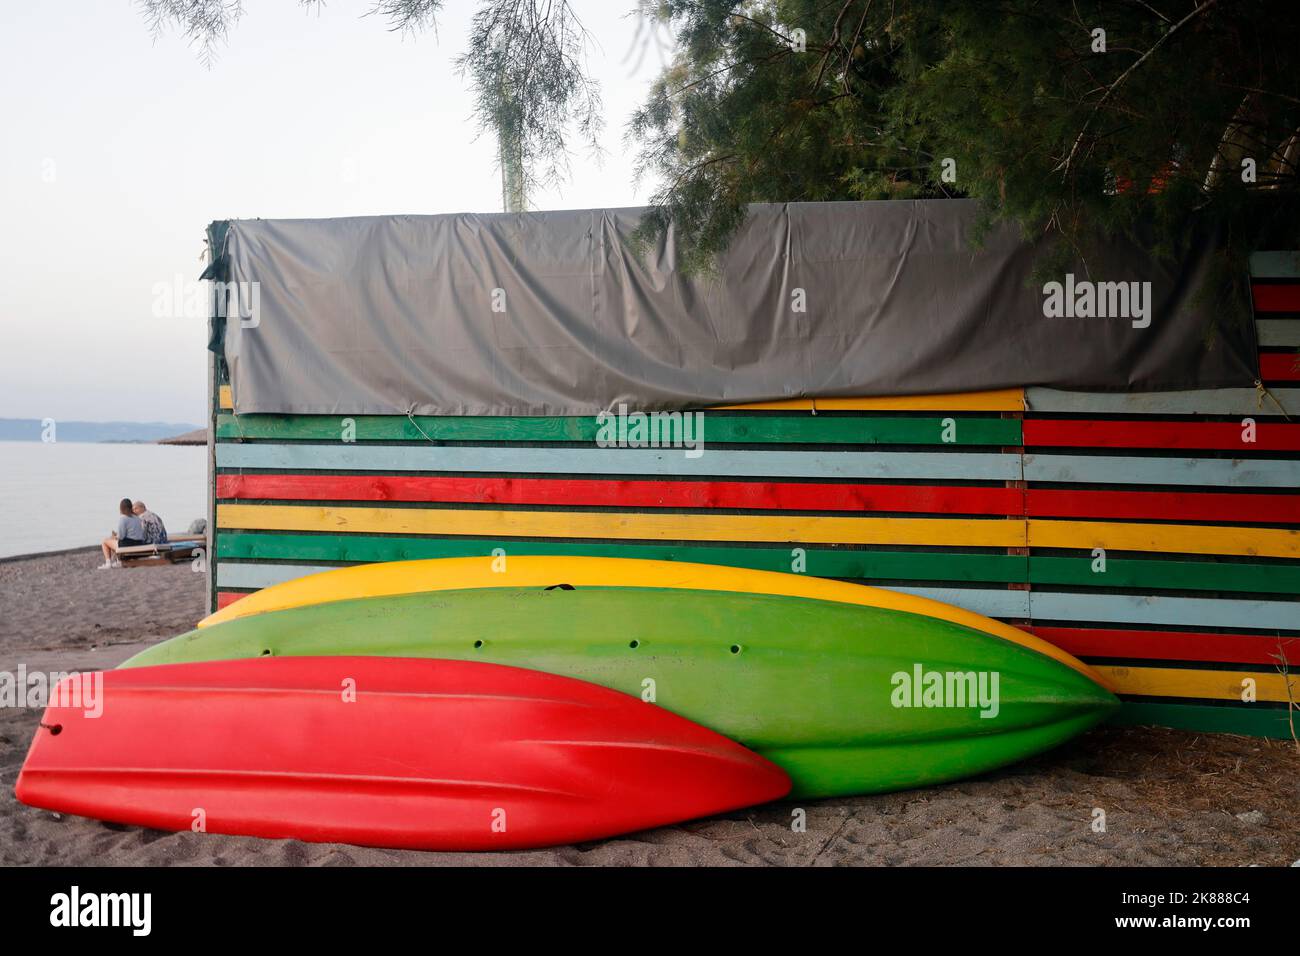 Kayaks / canoës et hangar coloré sur une plage de sable, Lesbos. Septembre / octobre 2022. Automne. Deux personnes assises. Banque D'Images